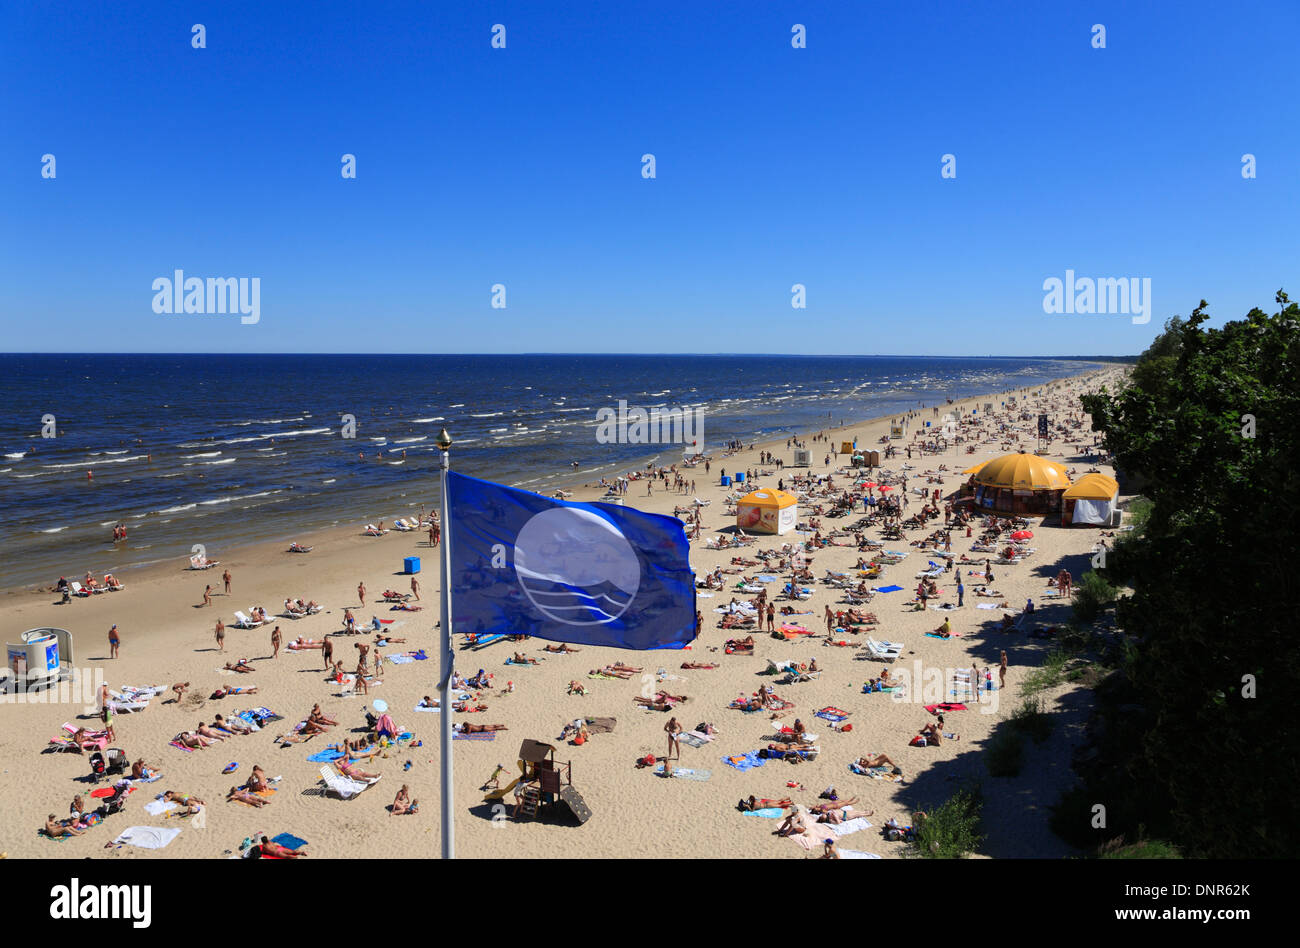 Playa de letonia playas majori fotografías e imágenes de alta resolución -  Alamy